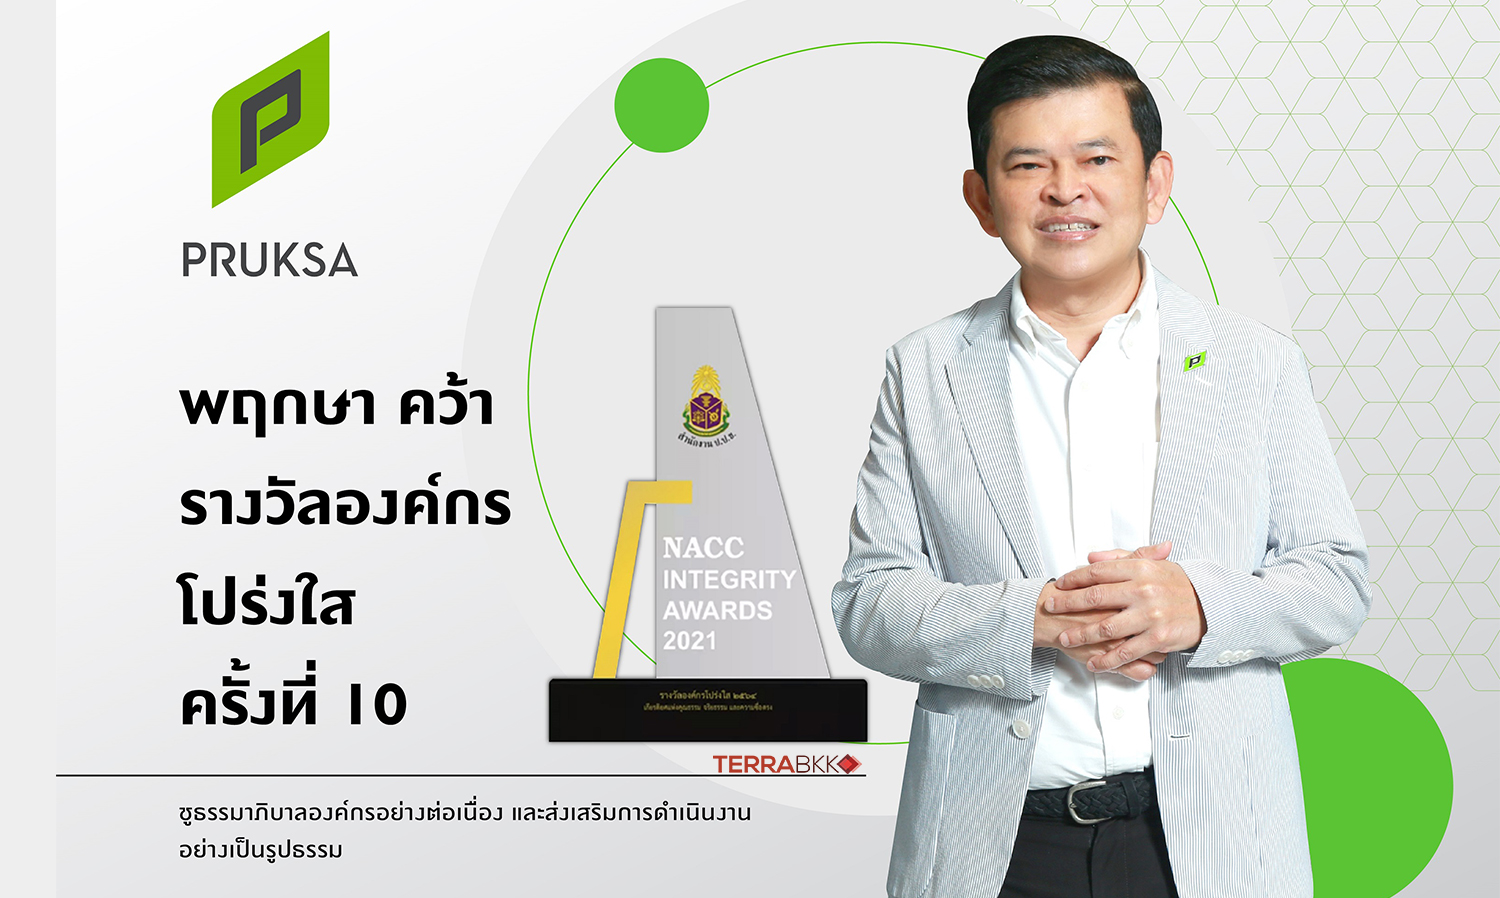 ‘พฤกษา’ อสังหาฯ รายแรก และรายเดียวของไทย  คว้ารางวัลเชิดชูเกียรติ  “องค์กรโปร่งใส ครั้งที่ 10”